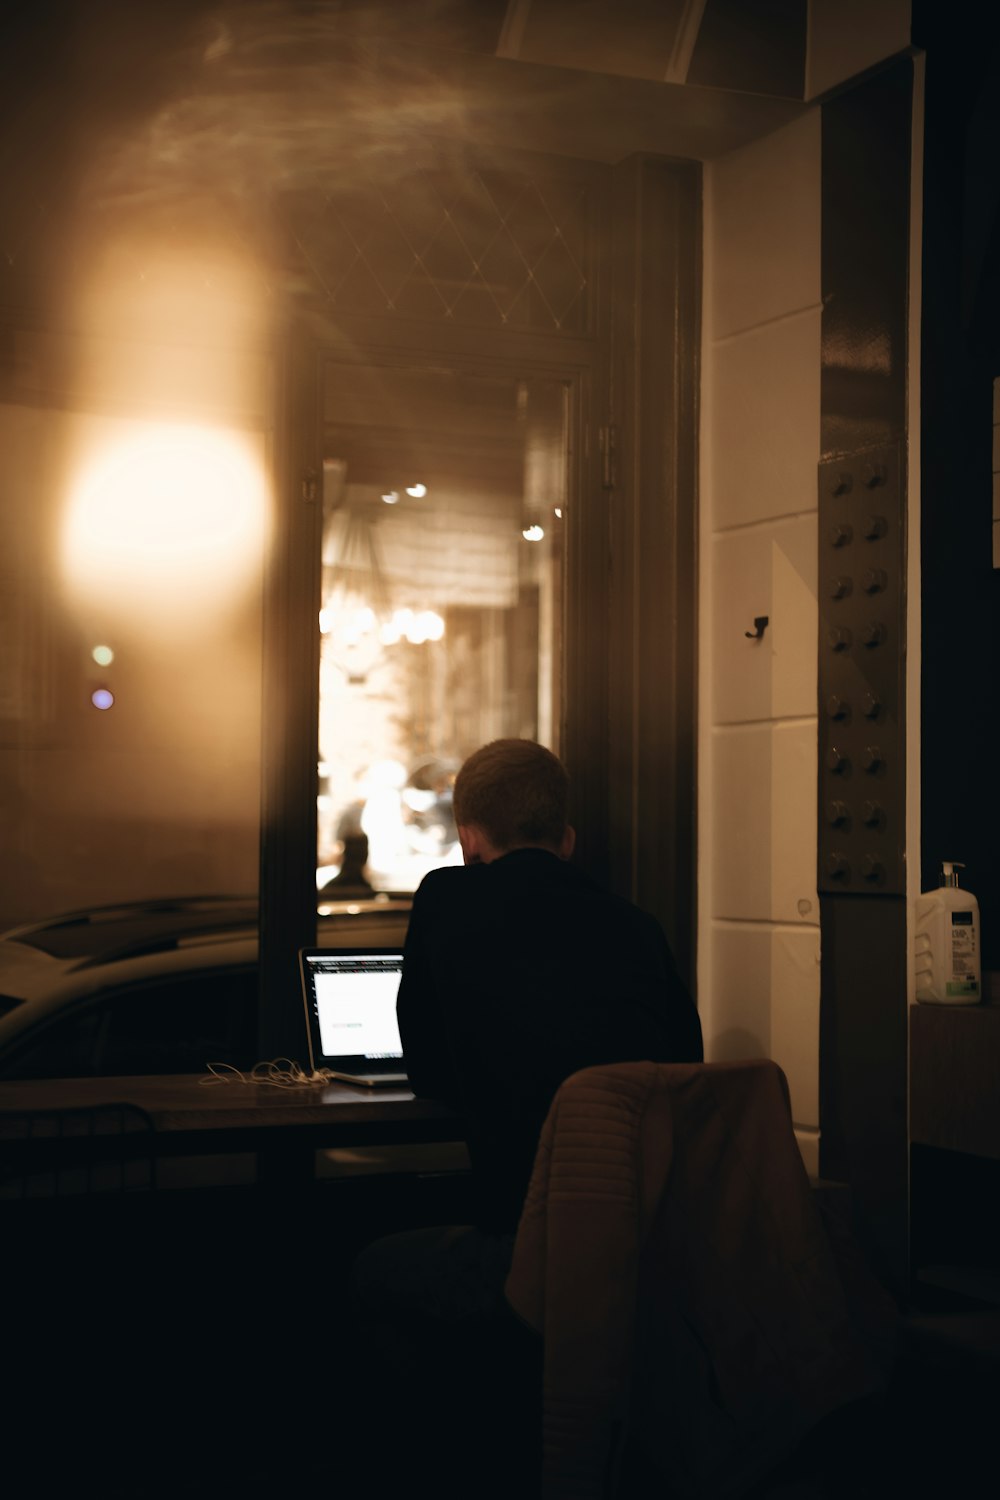 Ein Mann sitzt vor einem Laptop